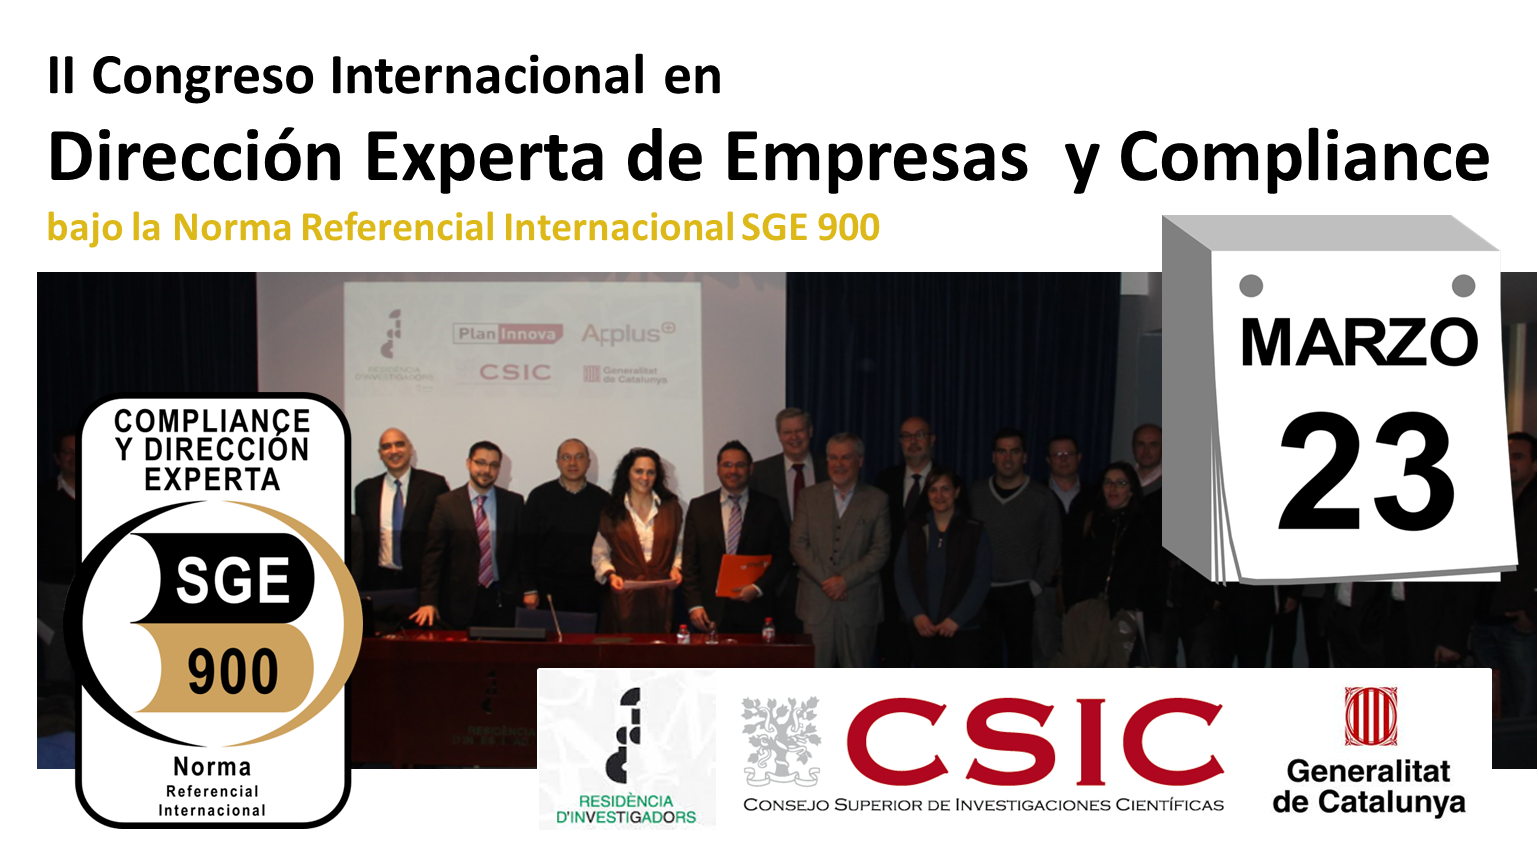 II Congreso Internacional en Dirección Experta de Empresas y Compliance